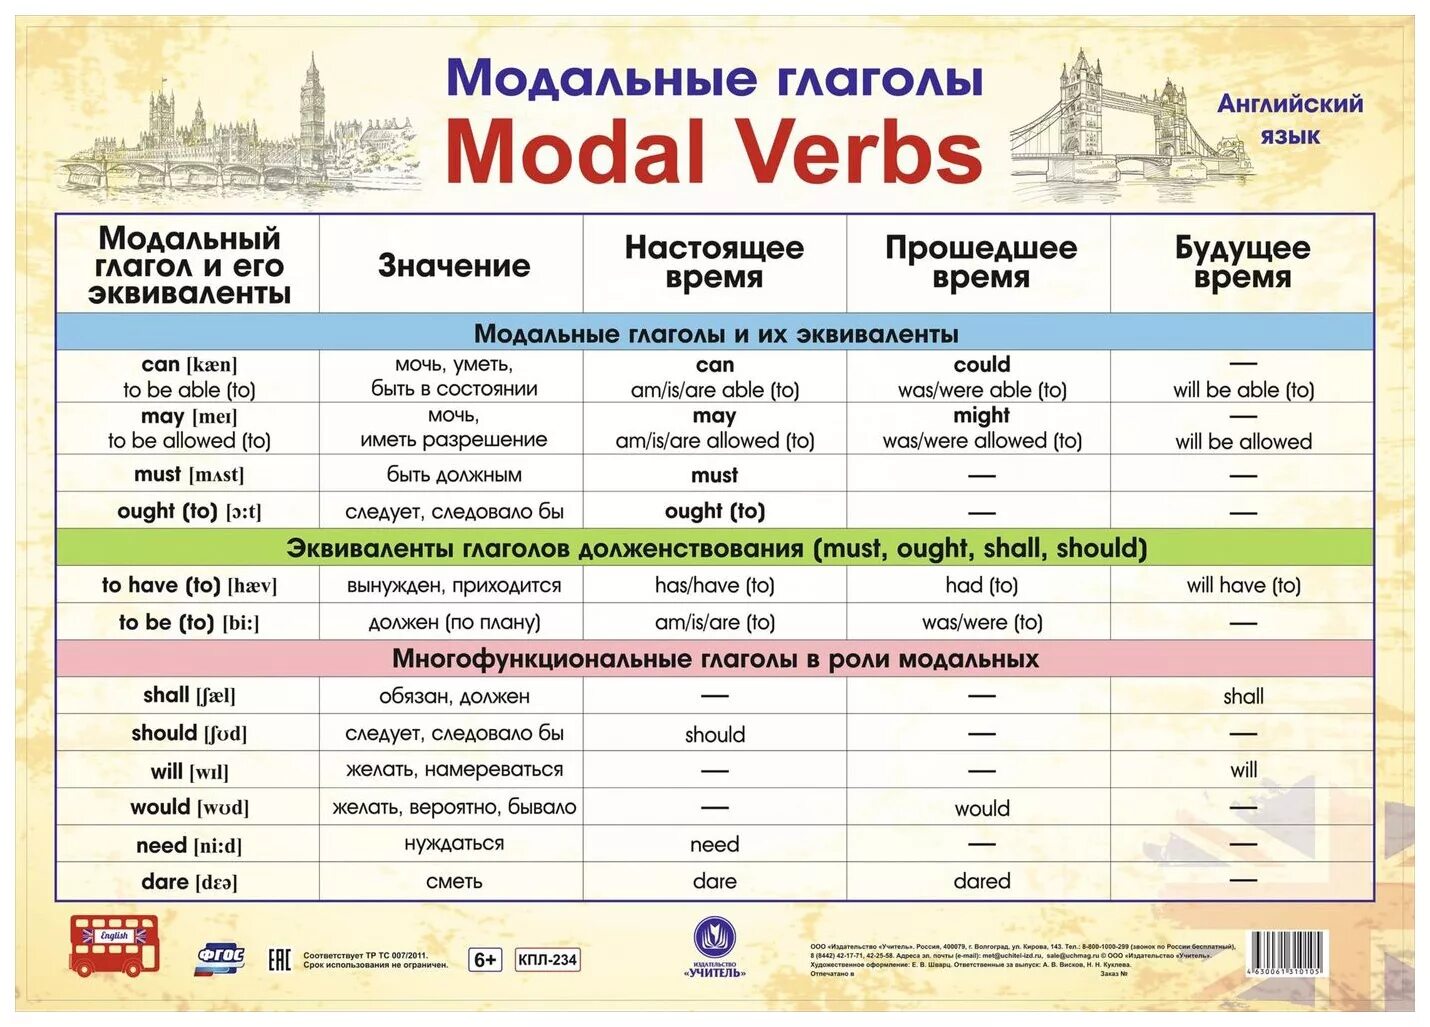 Все модальные глаголы в английском языке. Модальные глаголы в английском языке таблица. Модальные глаголы англ яз таблица. Модальные гляголы в анг. Можальные гдаголы втанглийсуом языке.